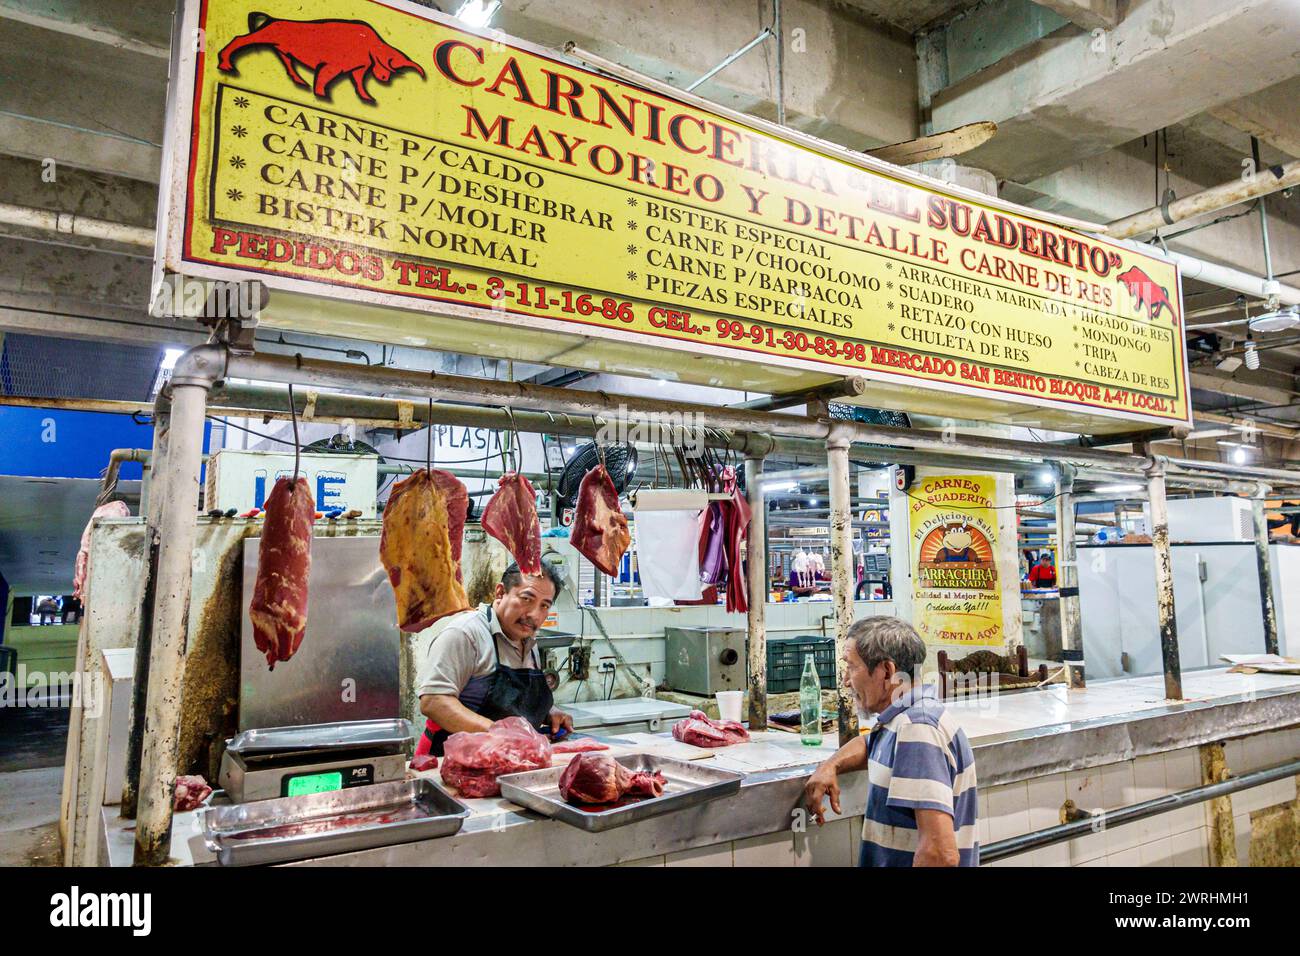 Merida Mexico, Centro Calle 56, Mercado San Benito, Mercado Municipal de Artesanias, Mercado Lucas de Galvez, fornitore stand, macelleria carne di manzo e maiale Foto Stock